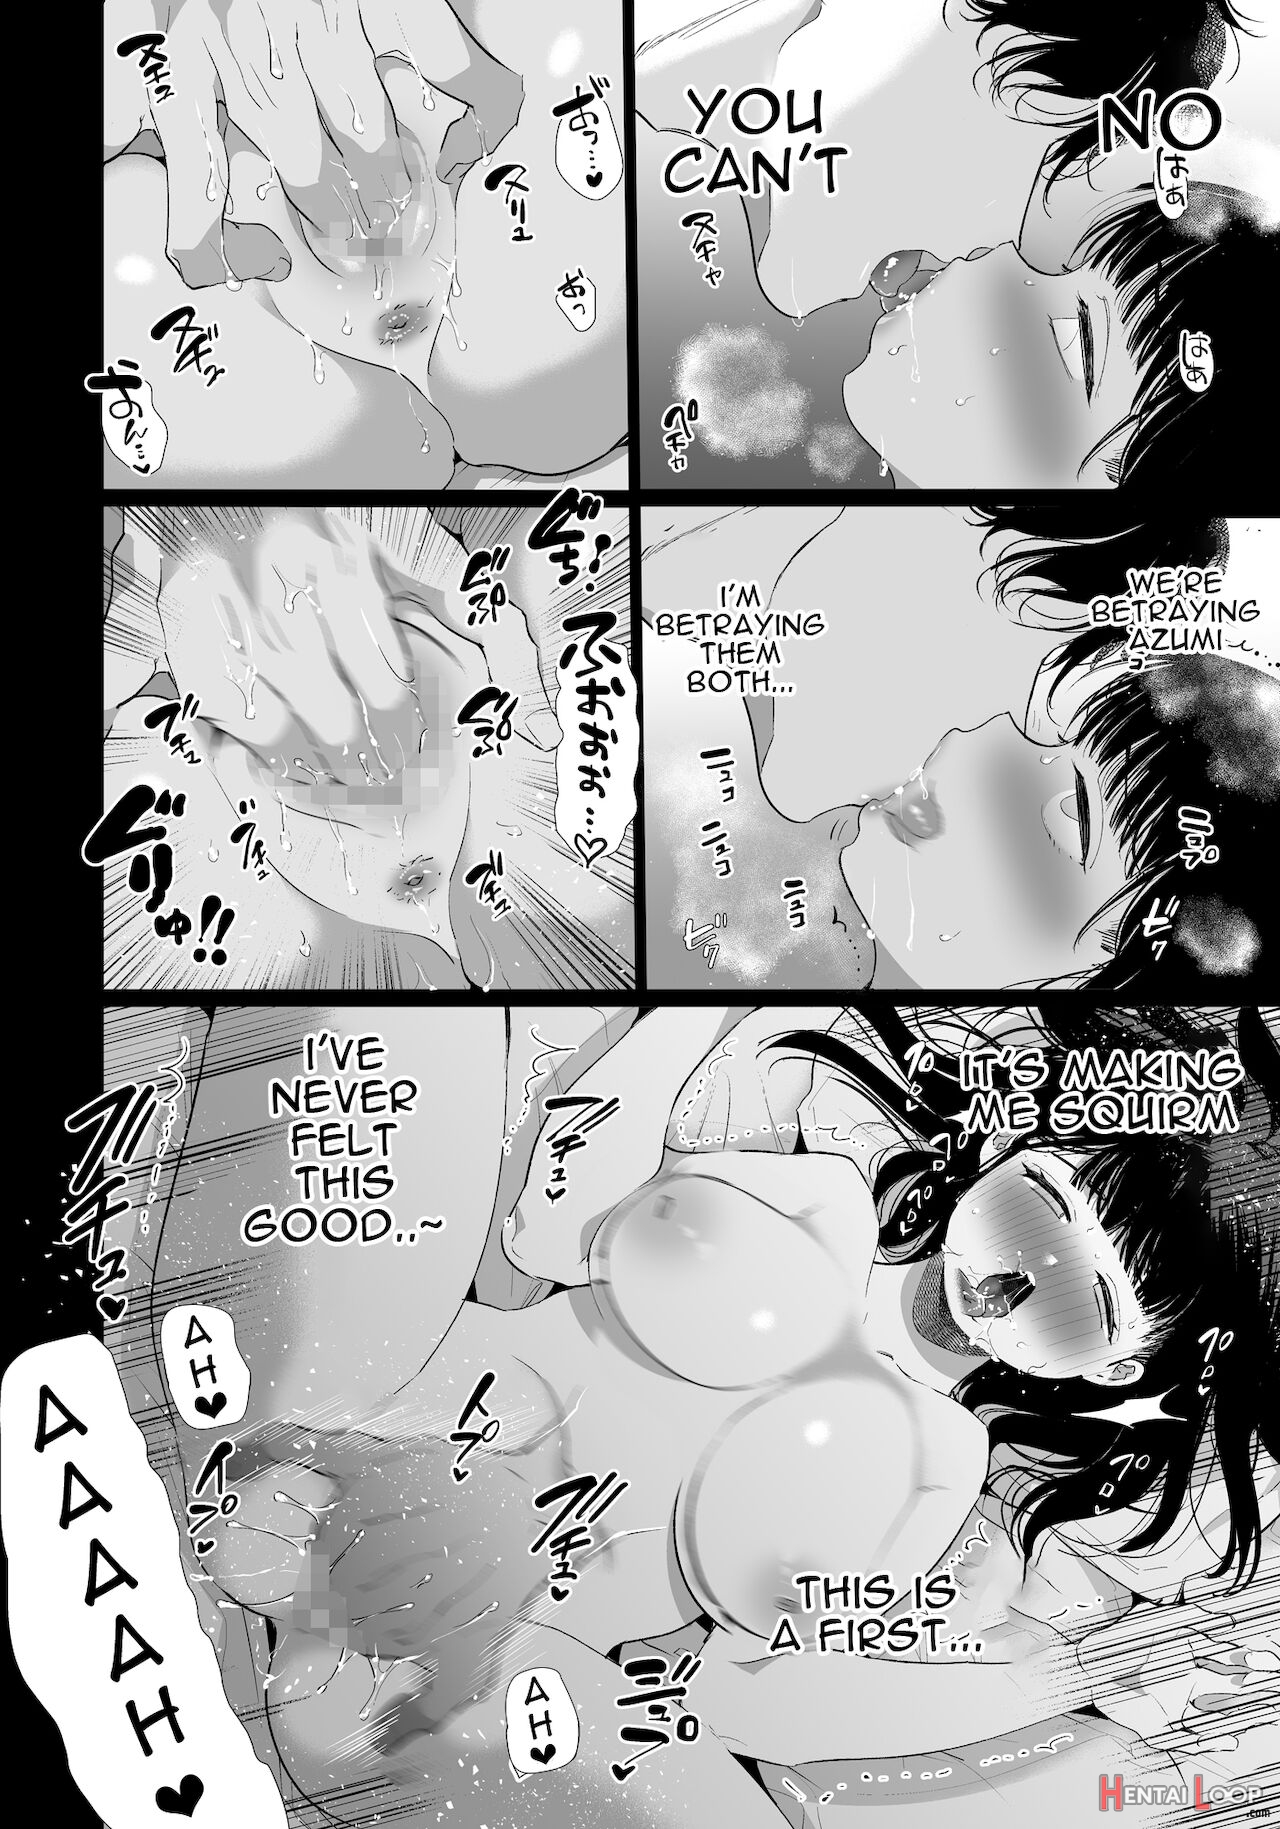 Yuki-chan Ntr page 15